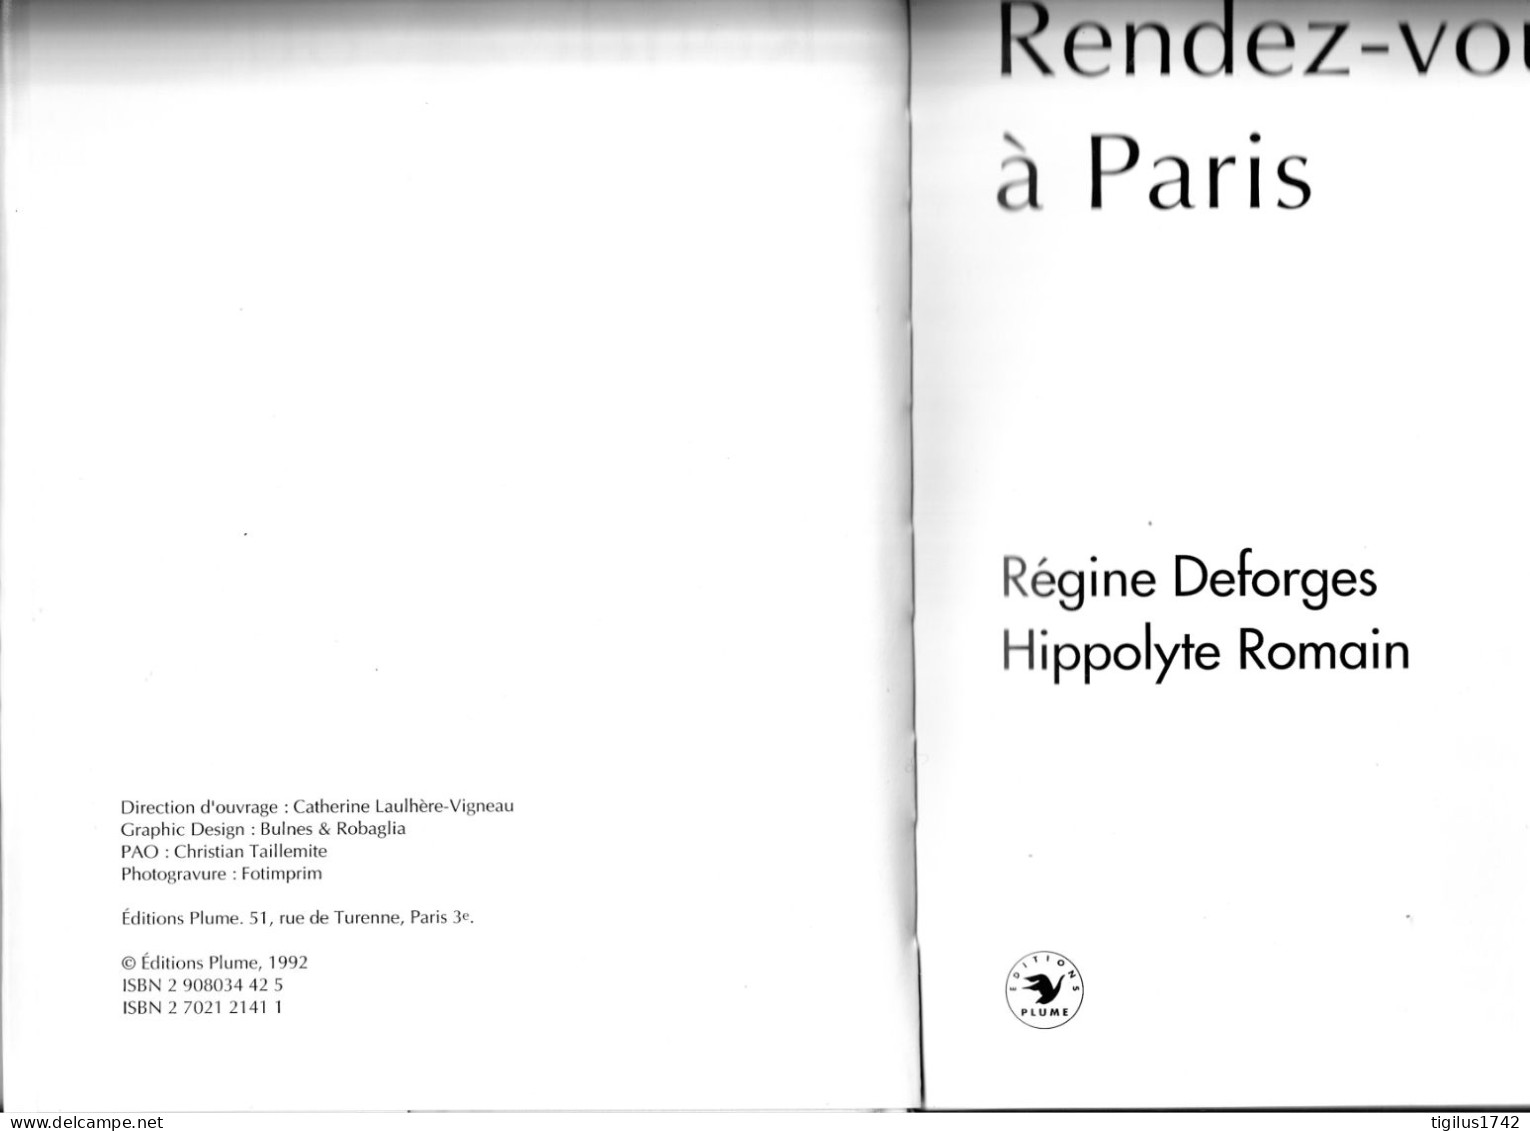 Régine Desforges, Hippolyte Romain, 1992. Rendez-vous à Paris. Ed. Plume - Auteurs Français